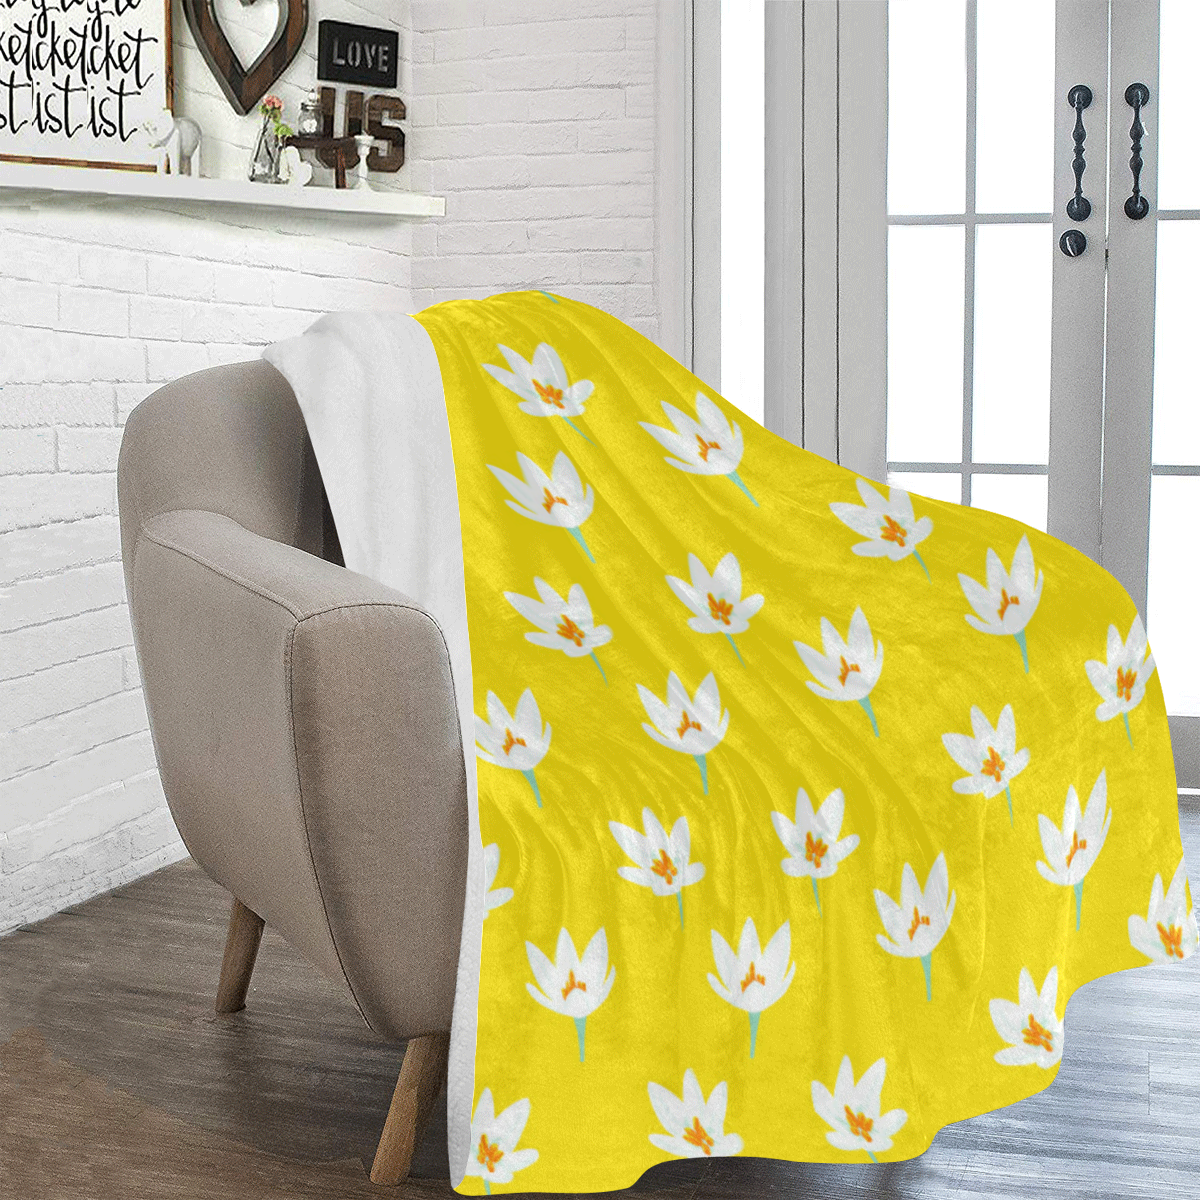 RL yellow Ultra-Soft Micro Fleece Blanket 60"x80"